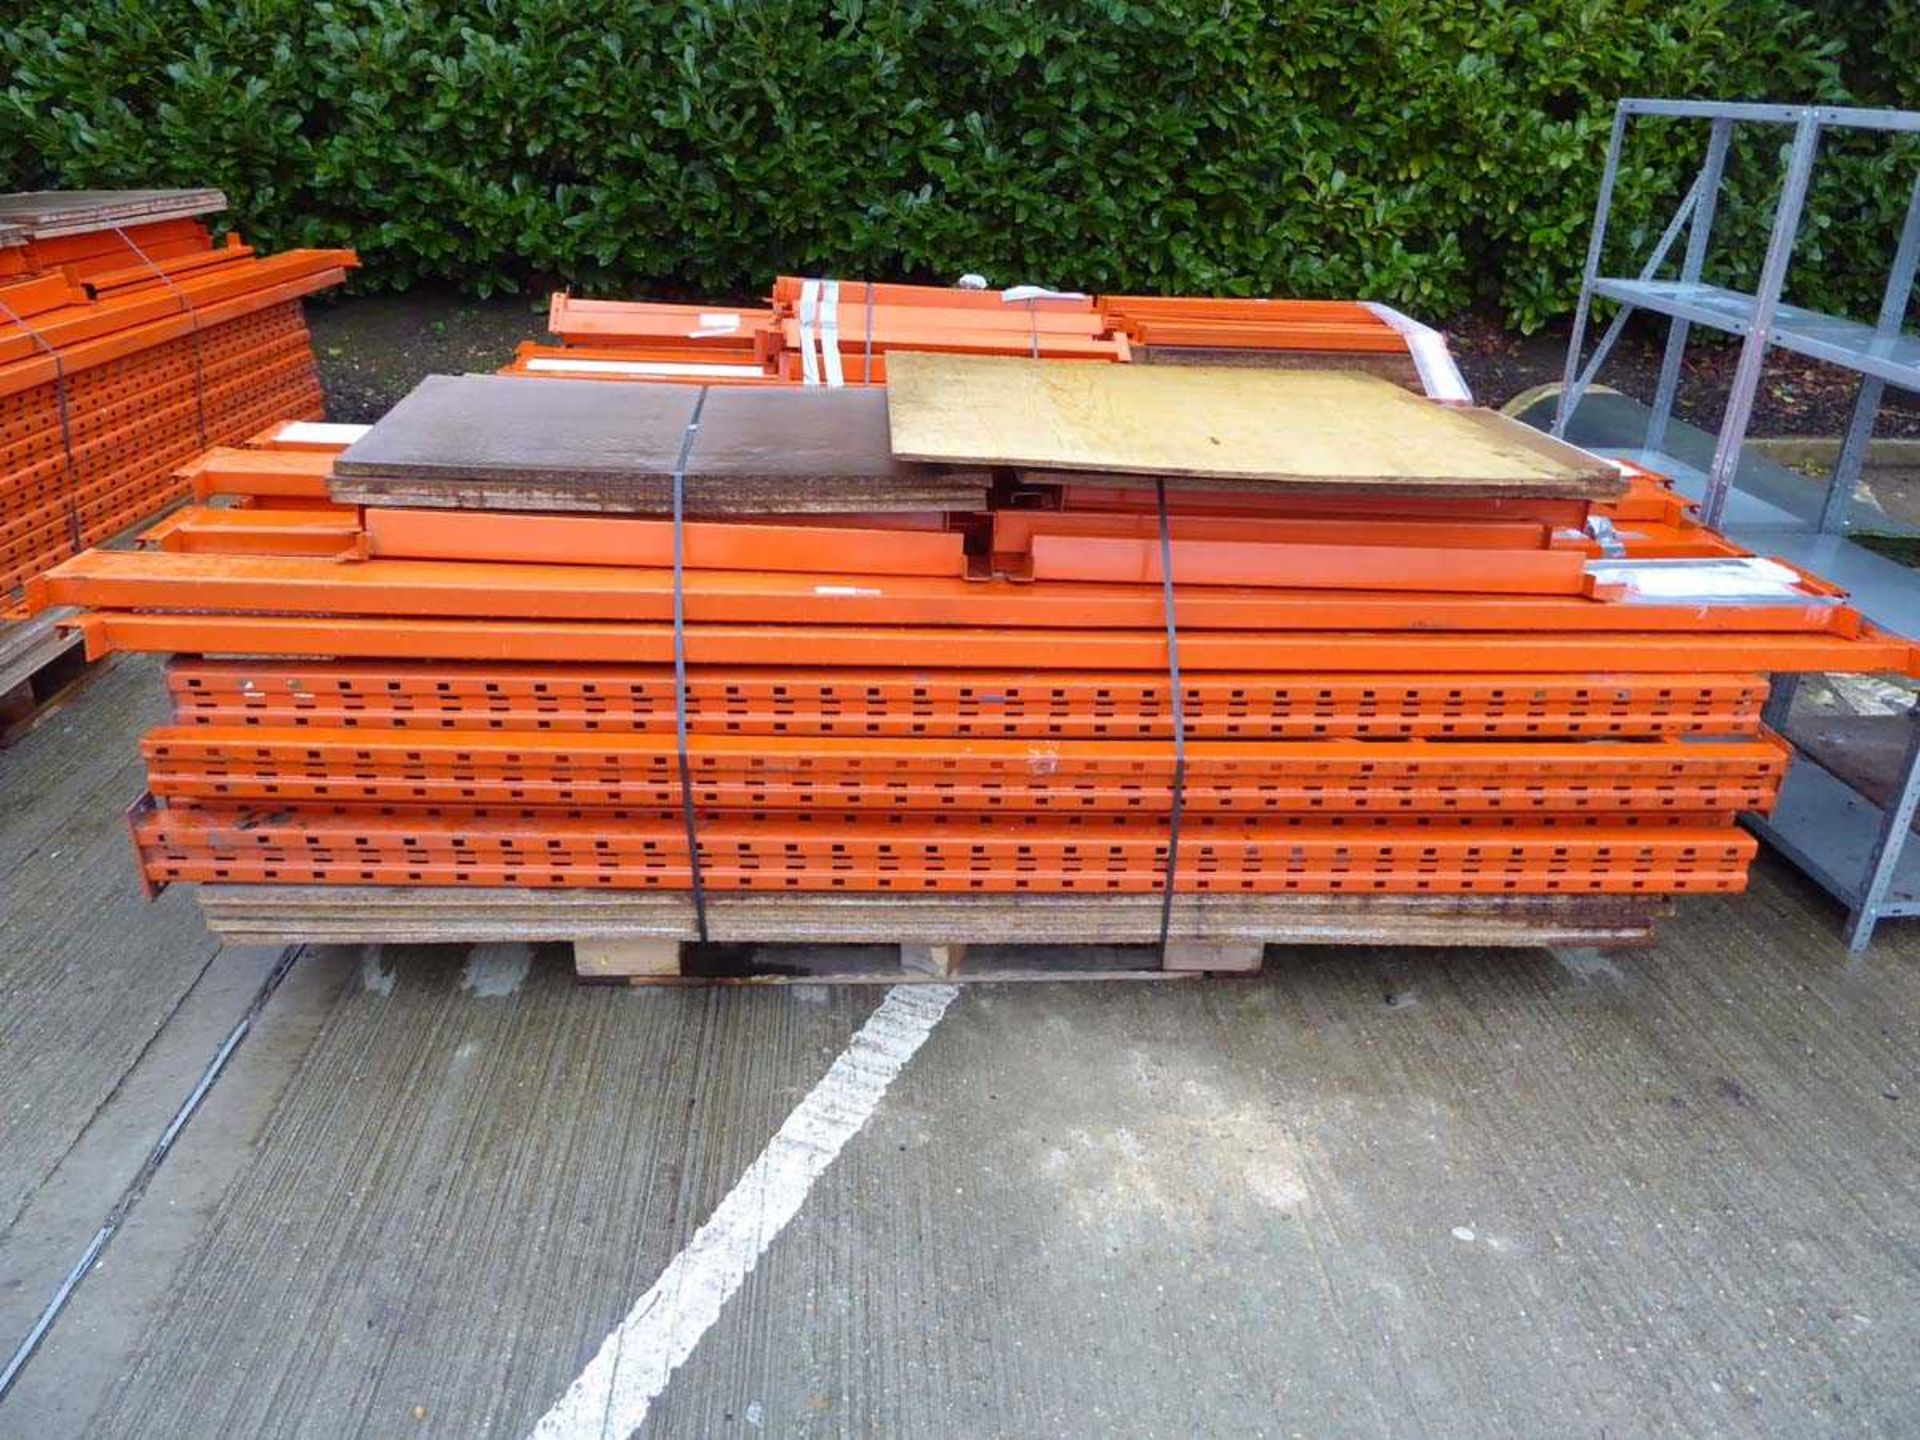 Pallet containing 3 running bays of large orange pallet racking